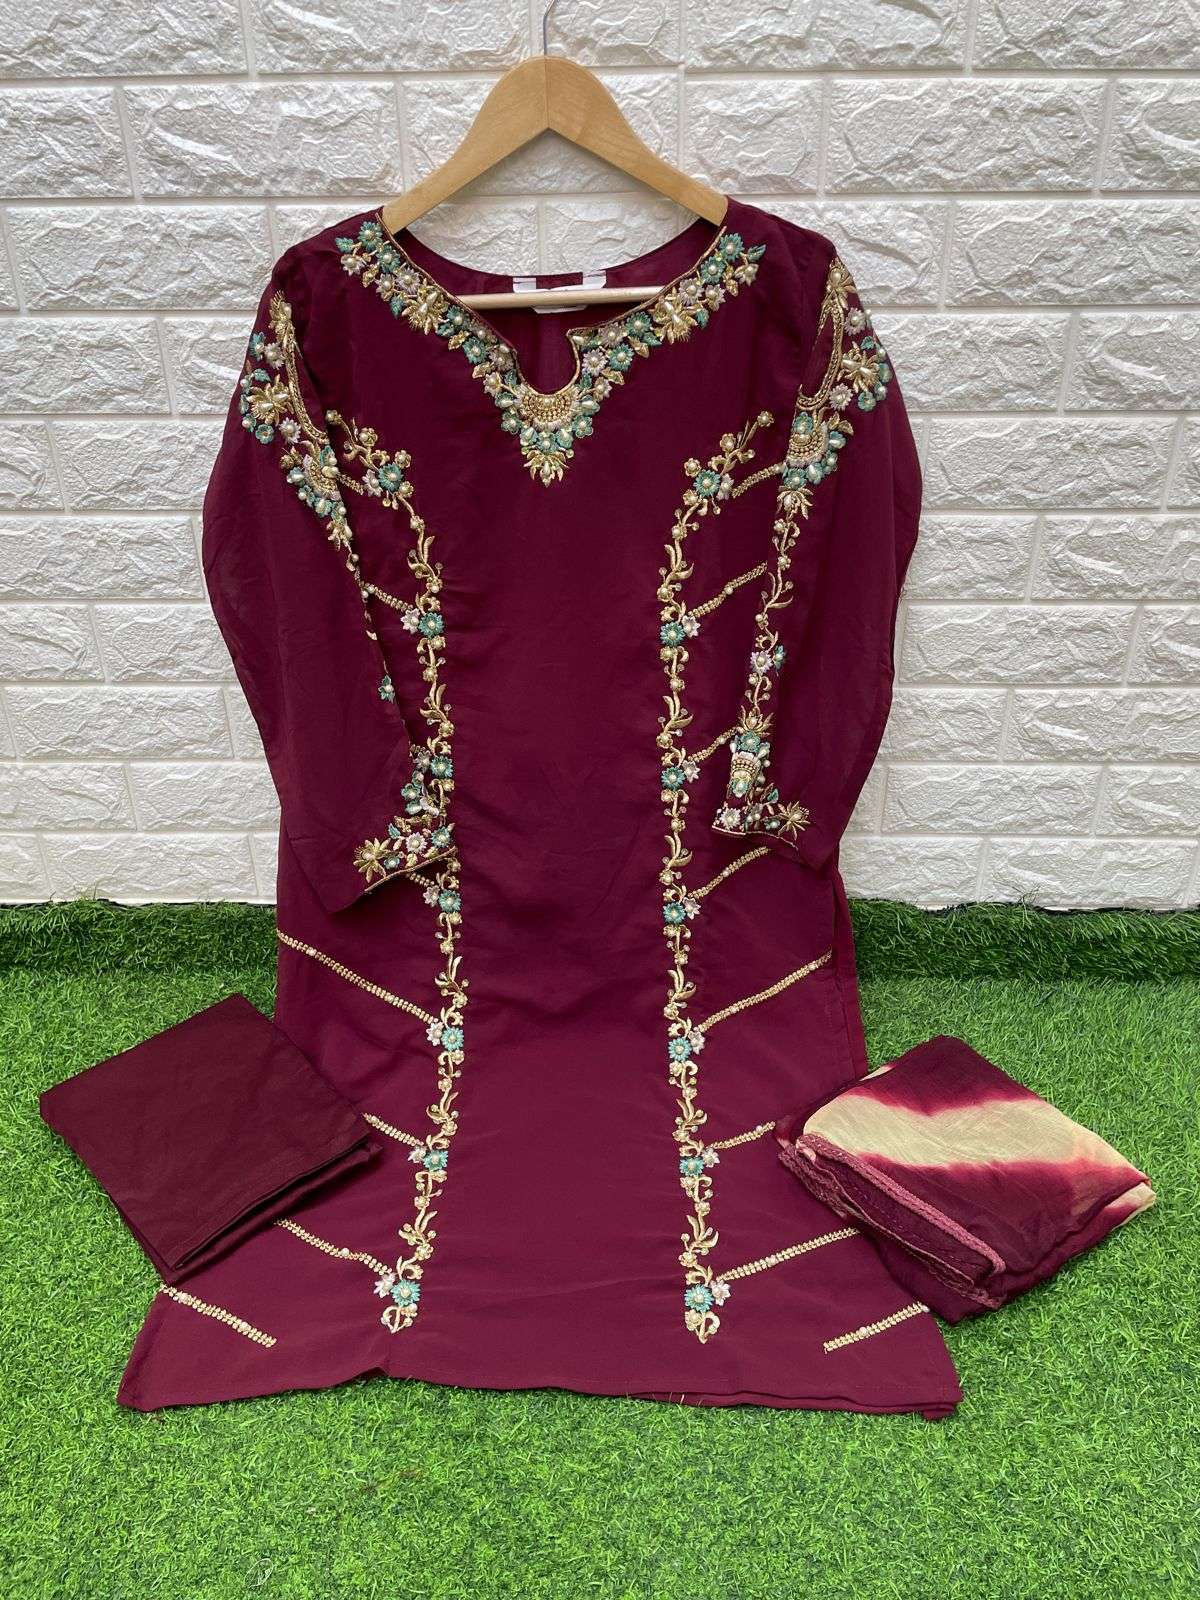 laxuria trendz 1260 series stylish designer pakistani salwar suits online supplier surat 